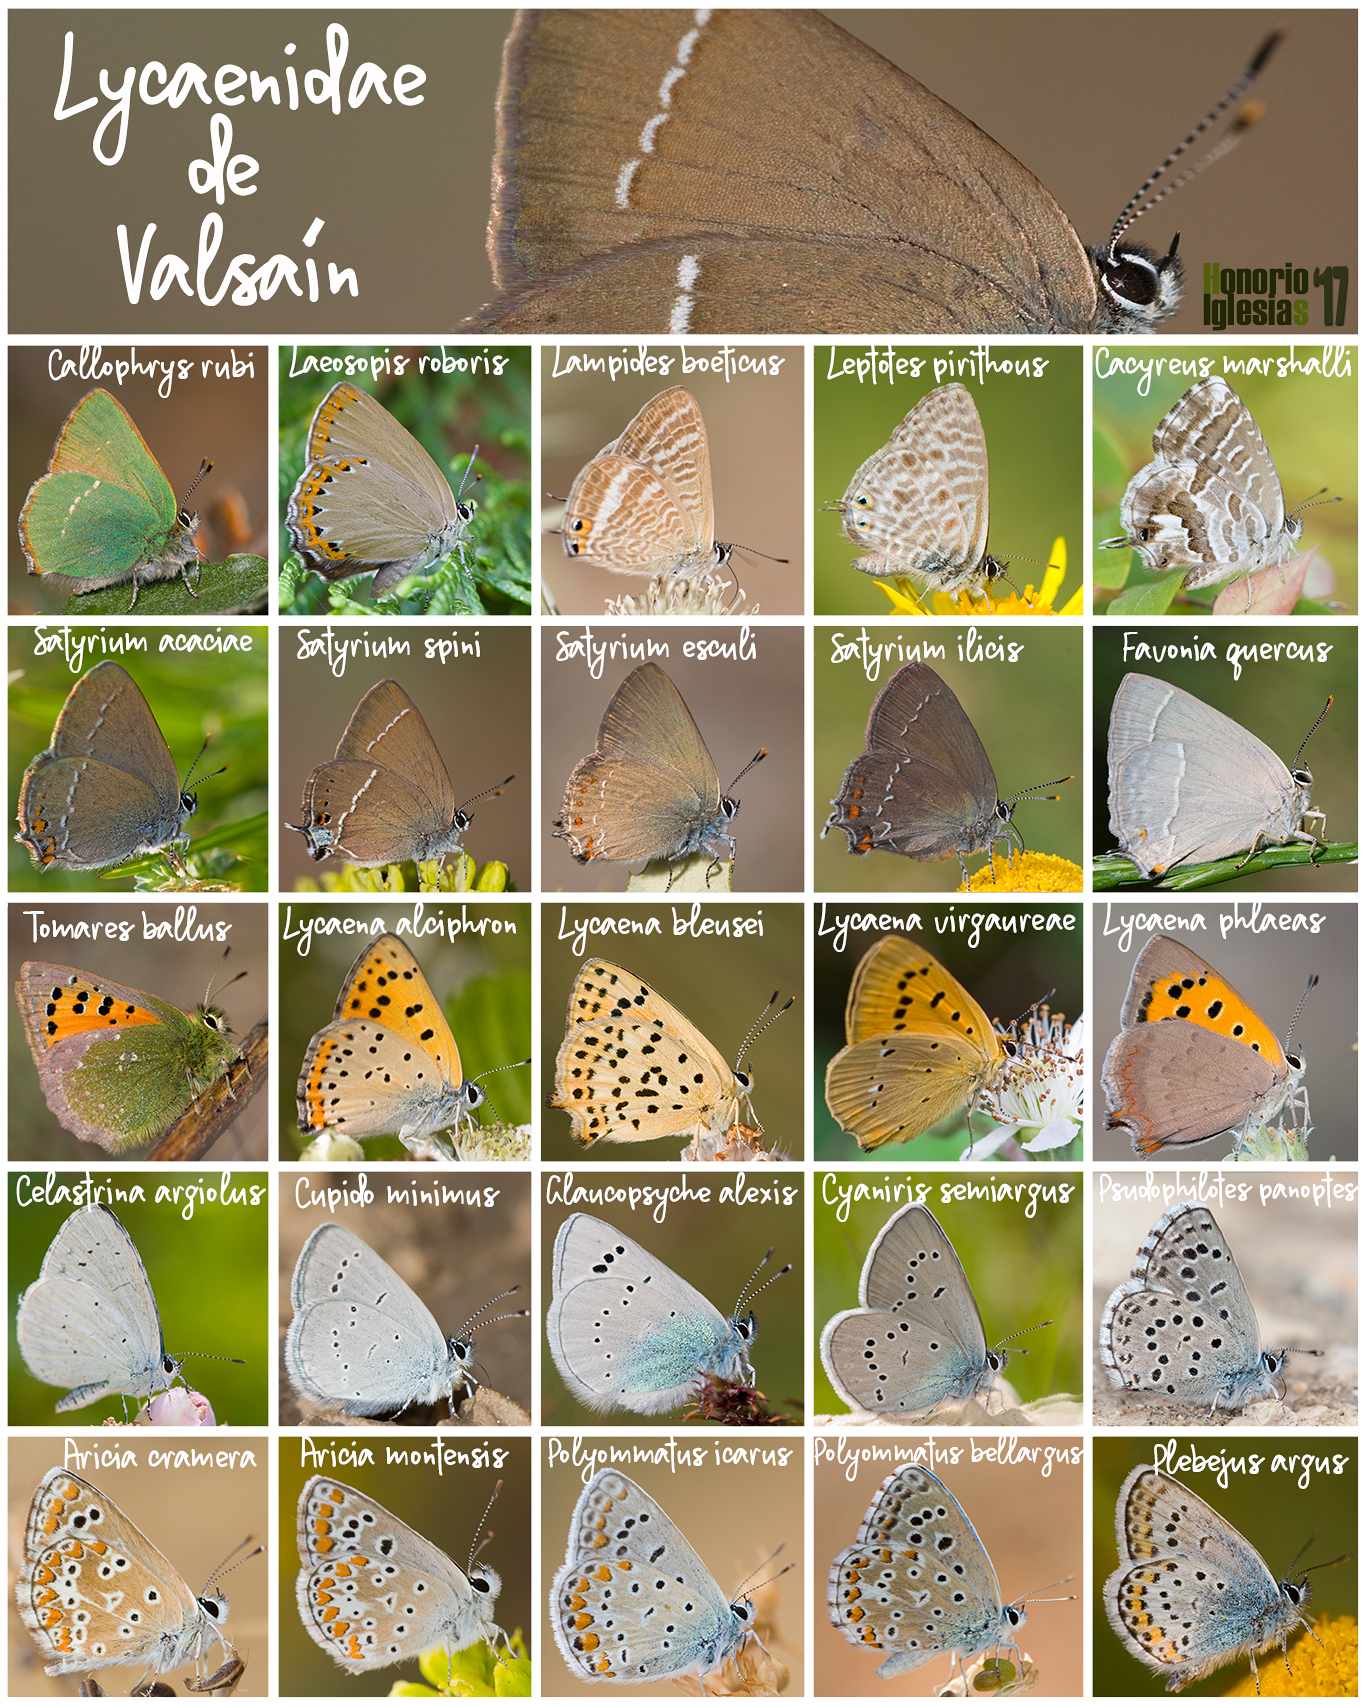 Montaje con los componentes de la familia Lycaenidae presentes en Valsaín